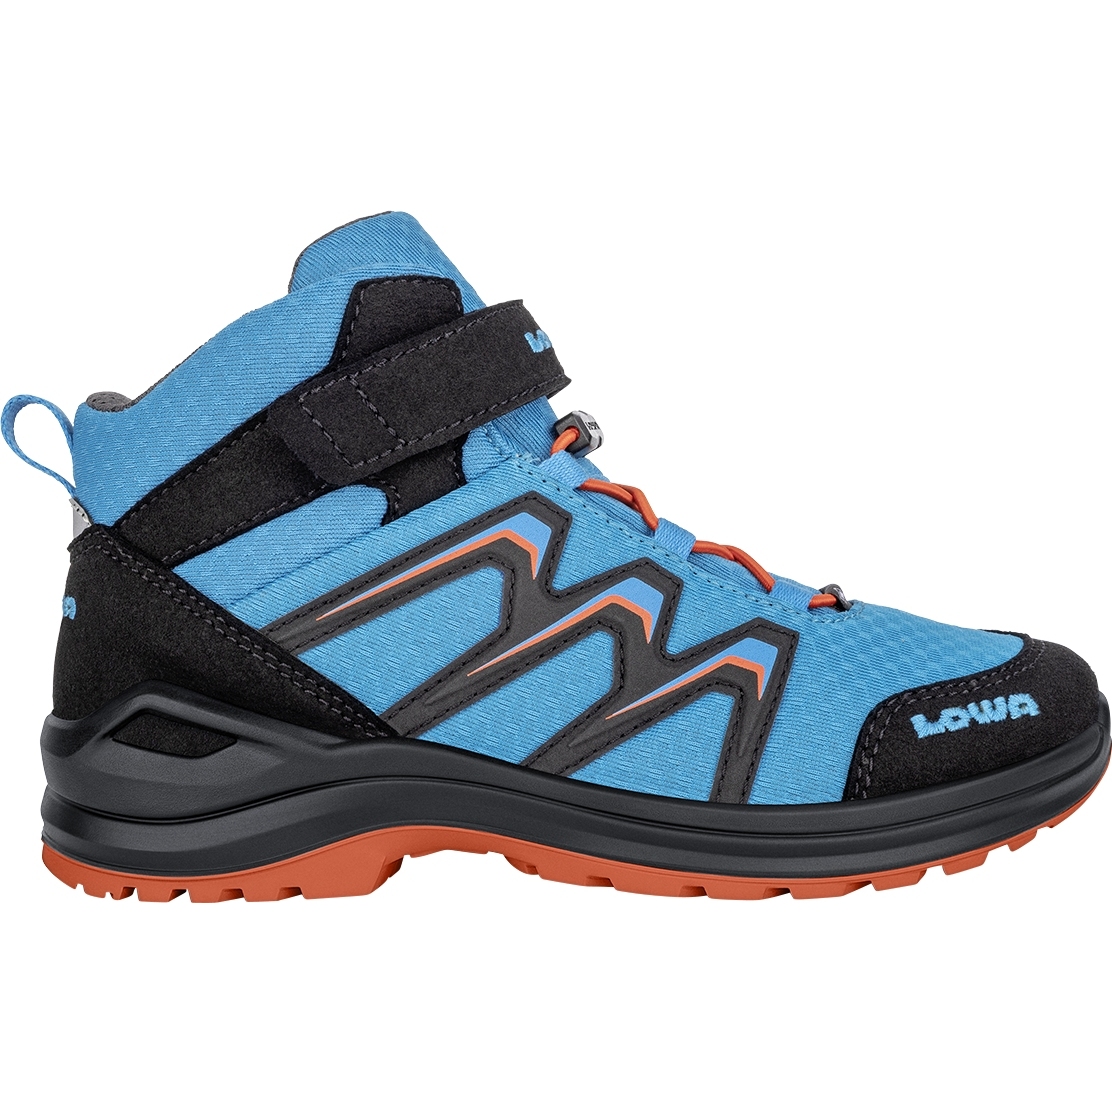 Produktbild von LOWA Maddox GTX Mid Junior Schuhe Kinder - blau/orange (Größe 28-35)